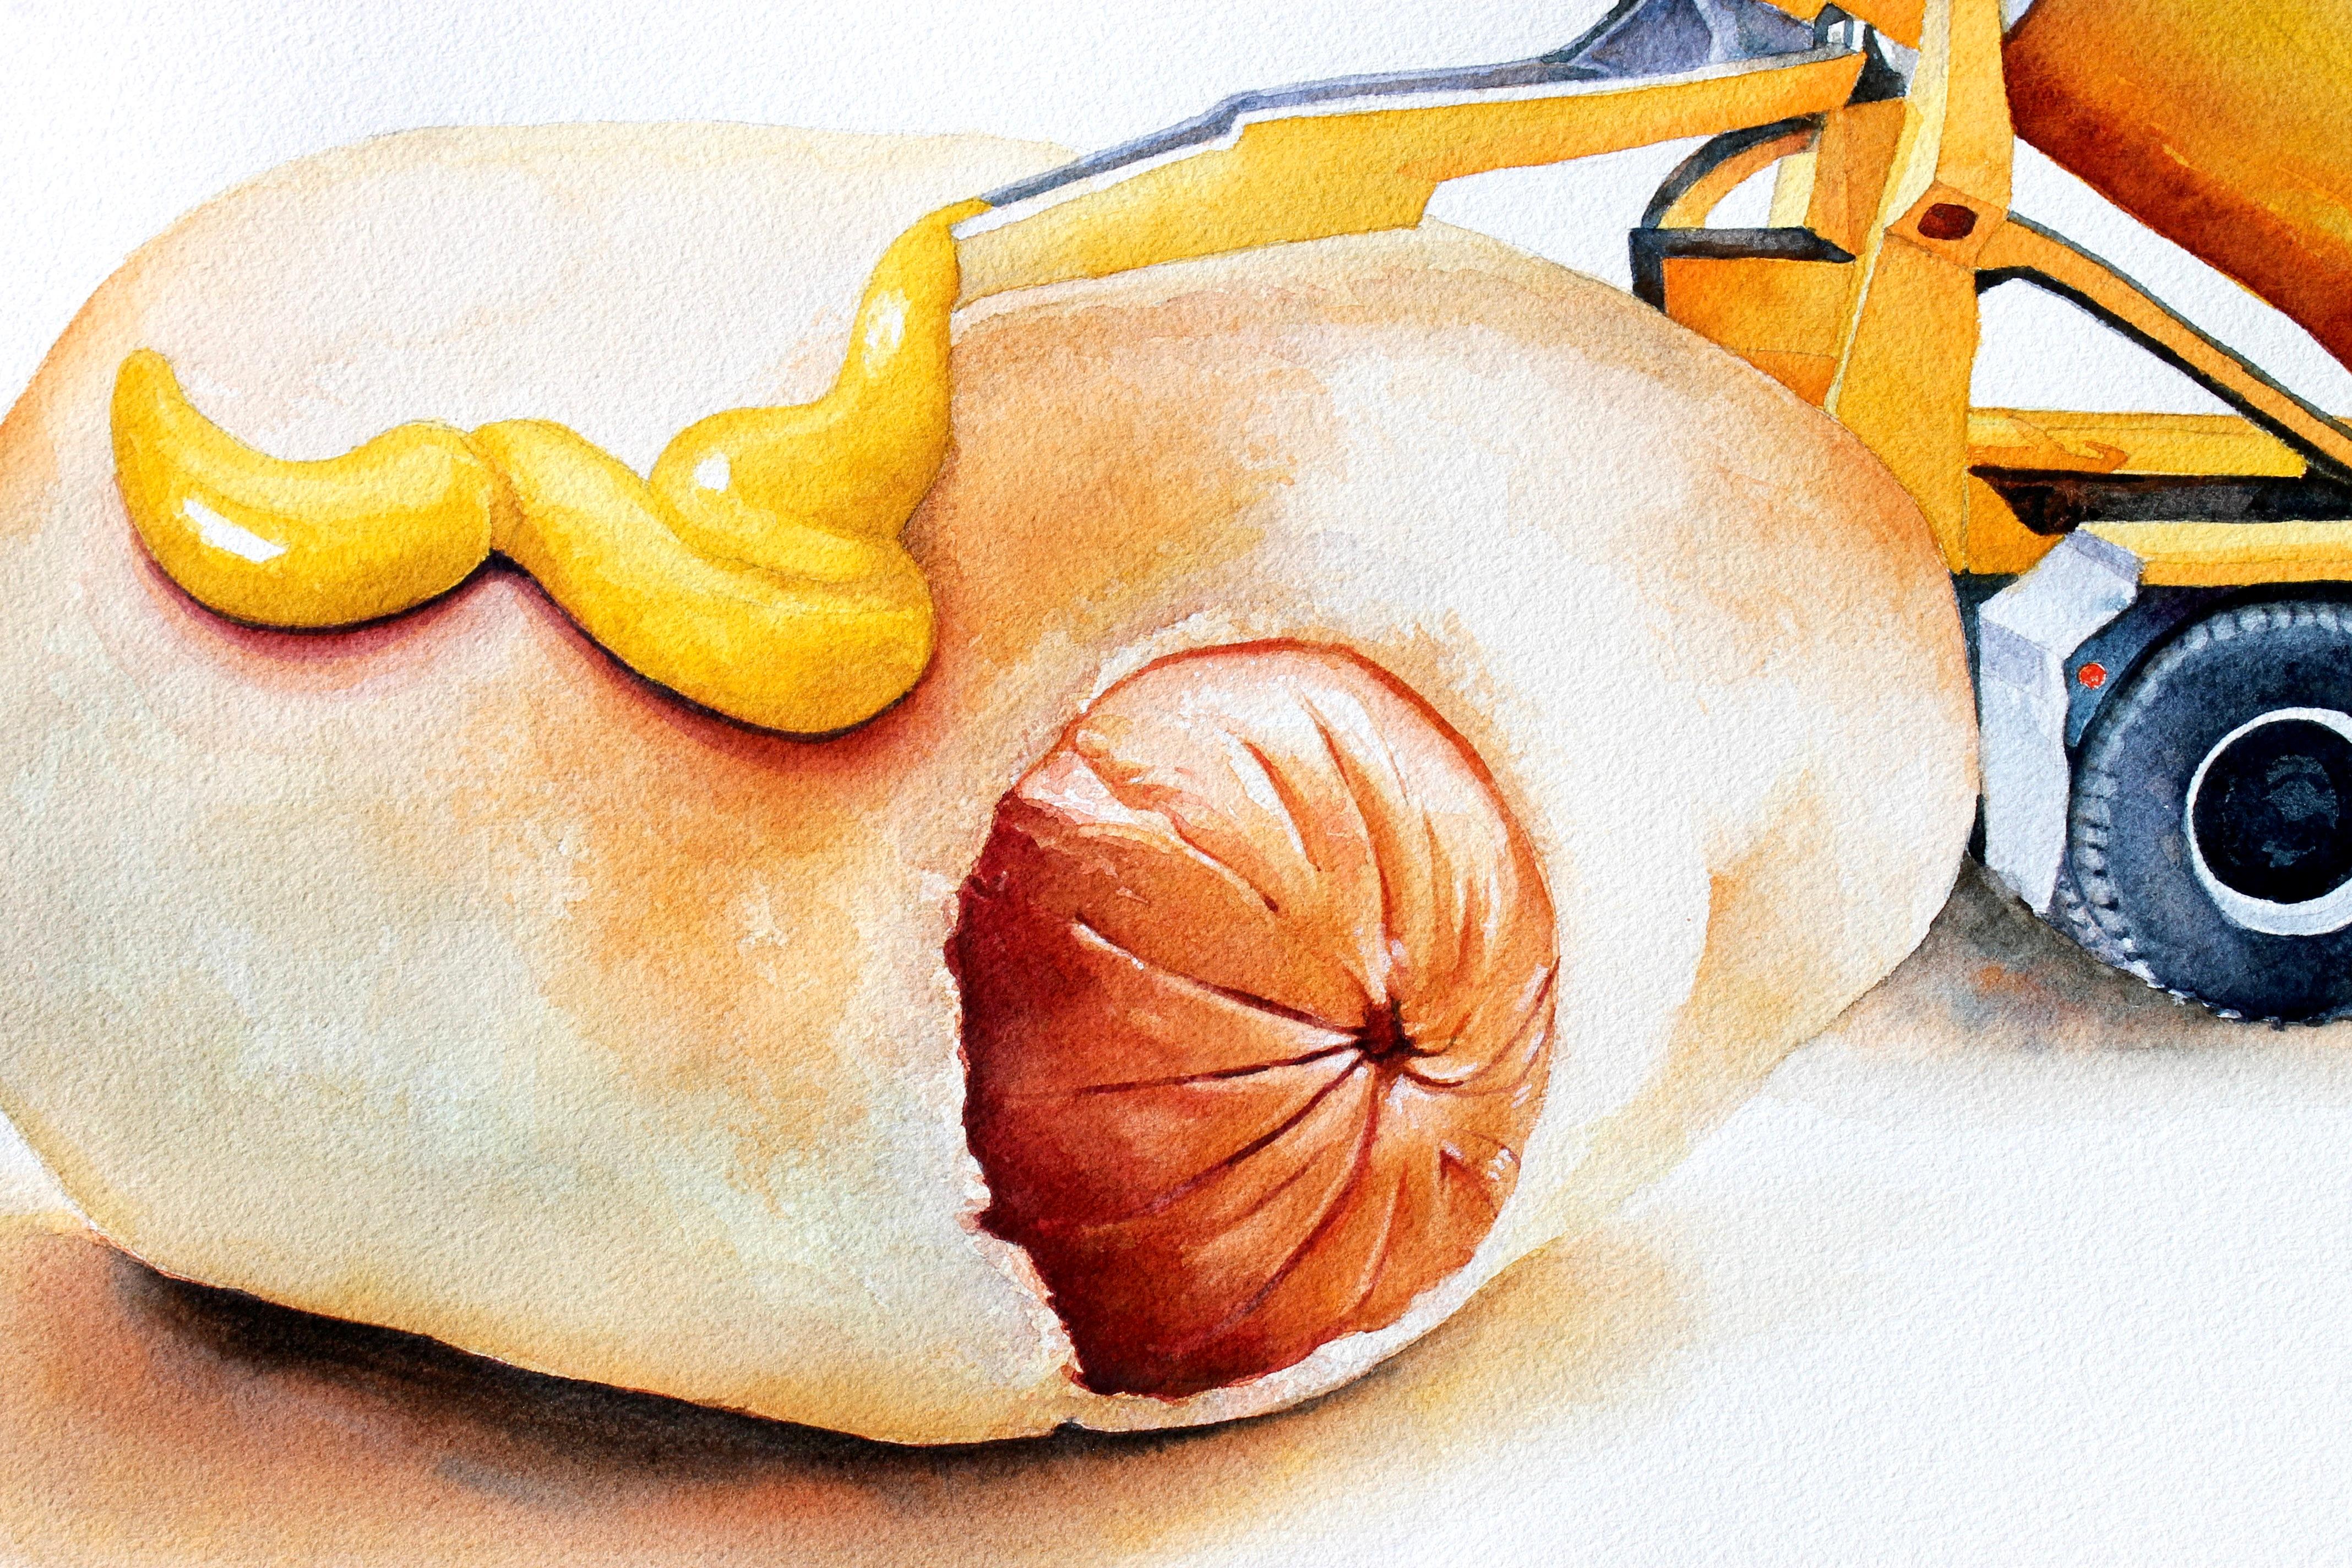 <p>Commentaires de l'artiste<br />Peint dans une tradition réaliste, un hot-dog dans un petit pain occupe le devant de la scène dans cette nature morte moderne. L'artiste Dwight Smith aime exagérer l'échelle des objets pour transmettre son concept